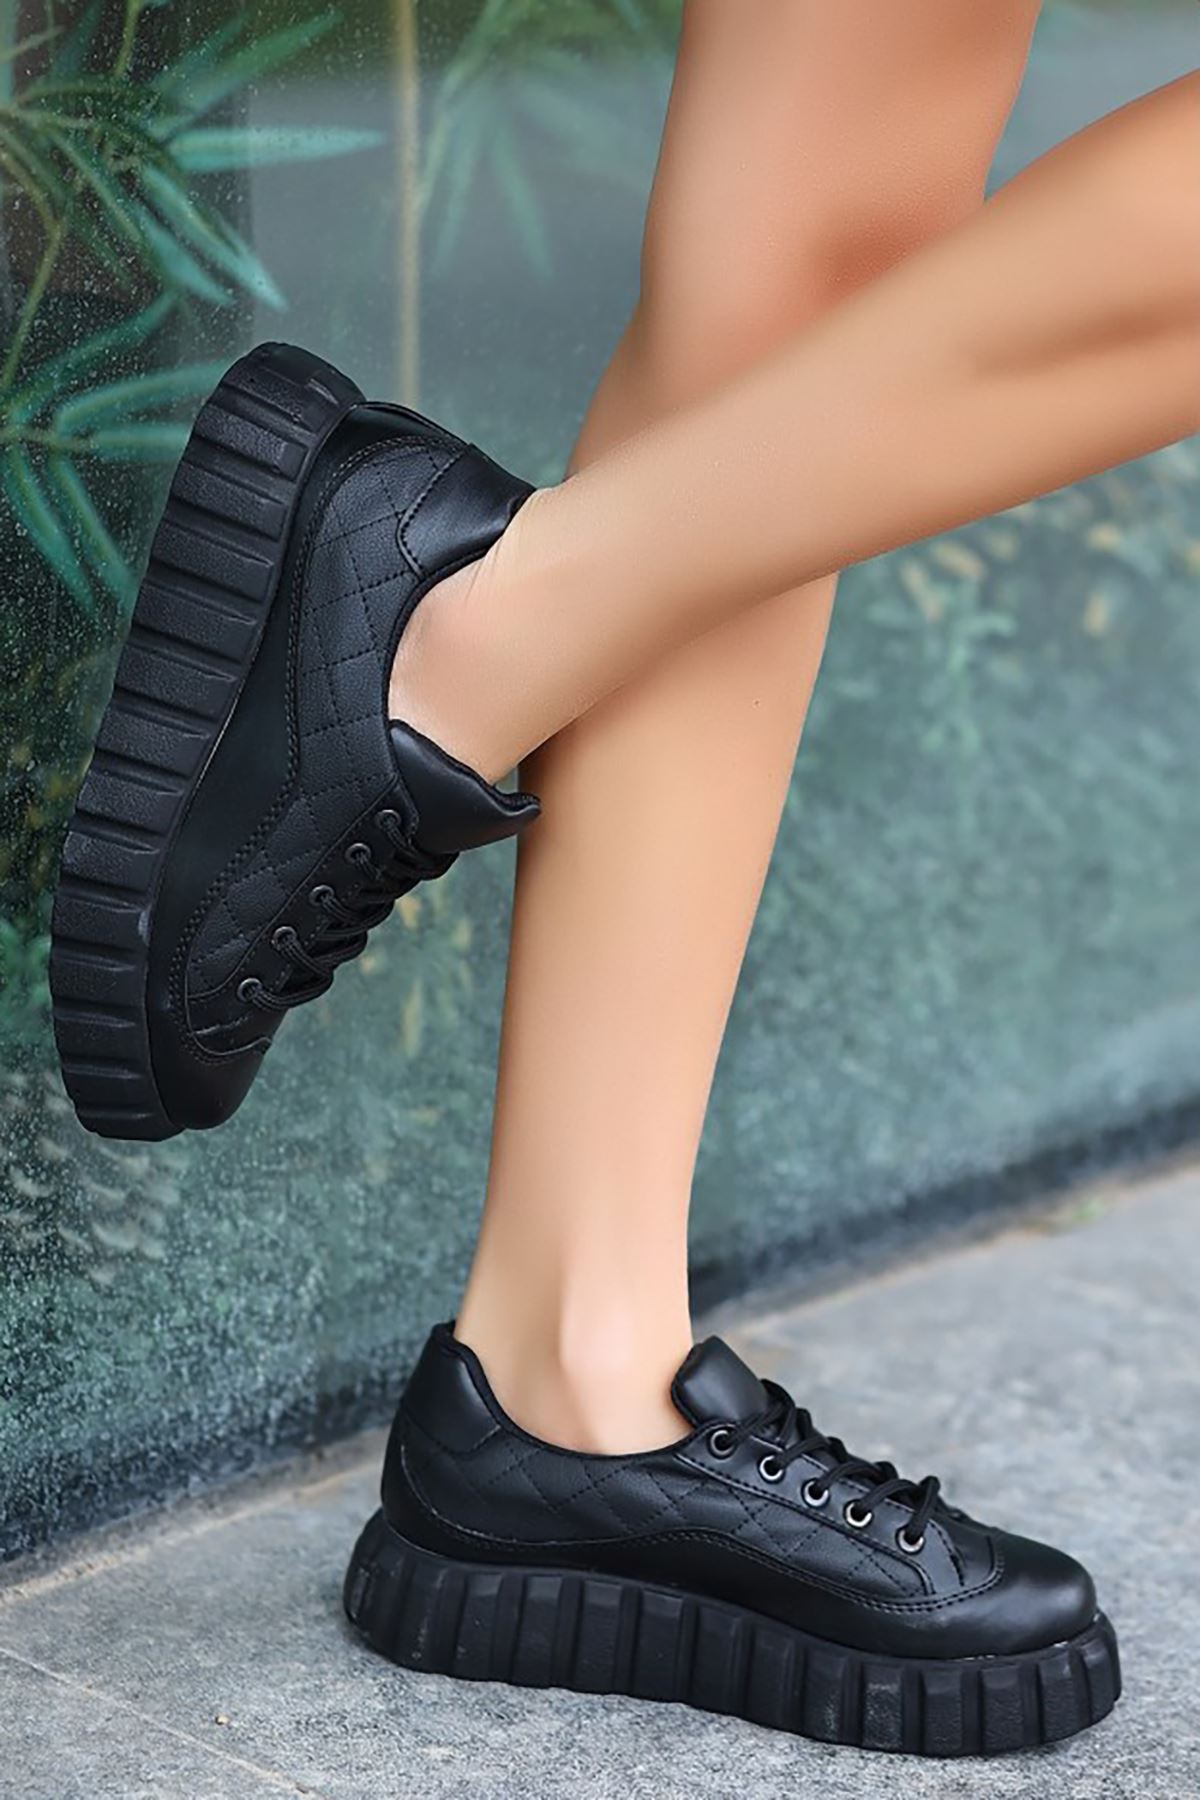 ERBJORİS Siyah Deri Bayan Bağcıklı Spor Ayakkabı